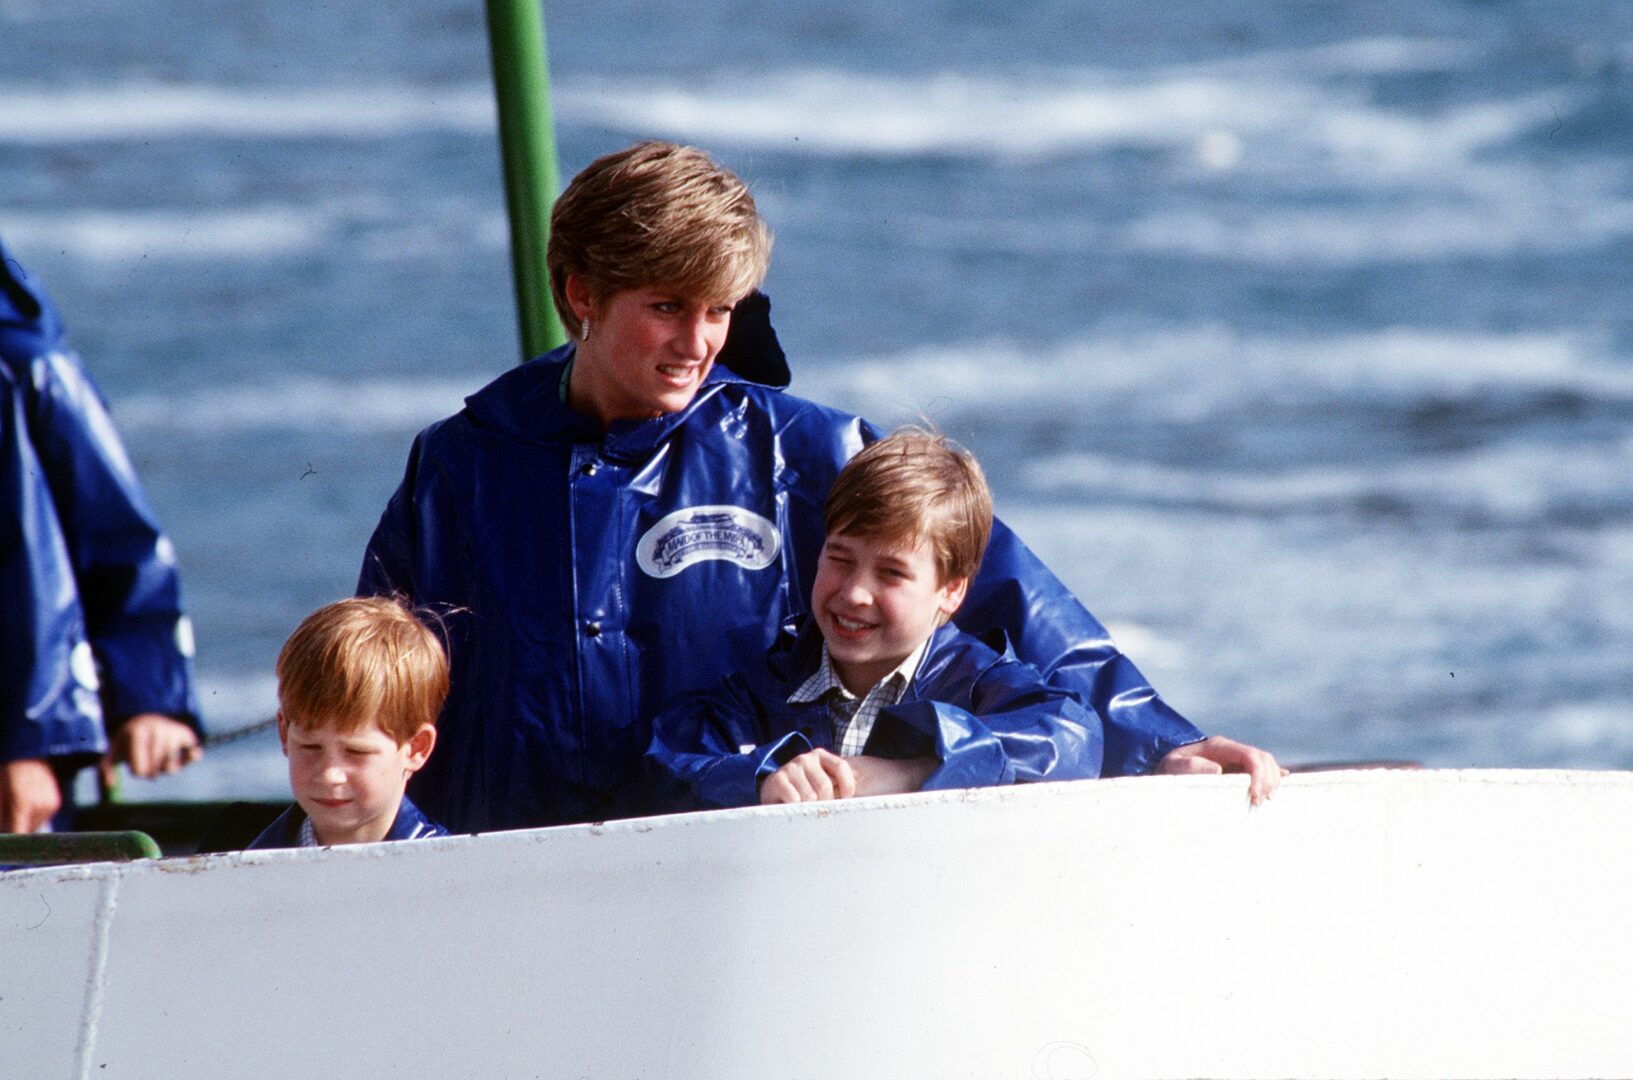  La Princesse Diana avec le Prince Harry et le Prince William @Getty Images